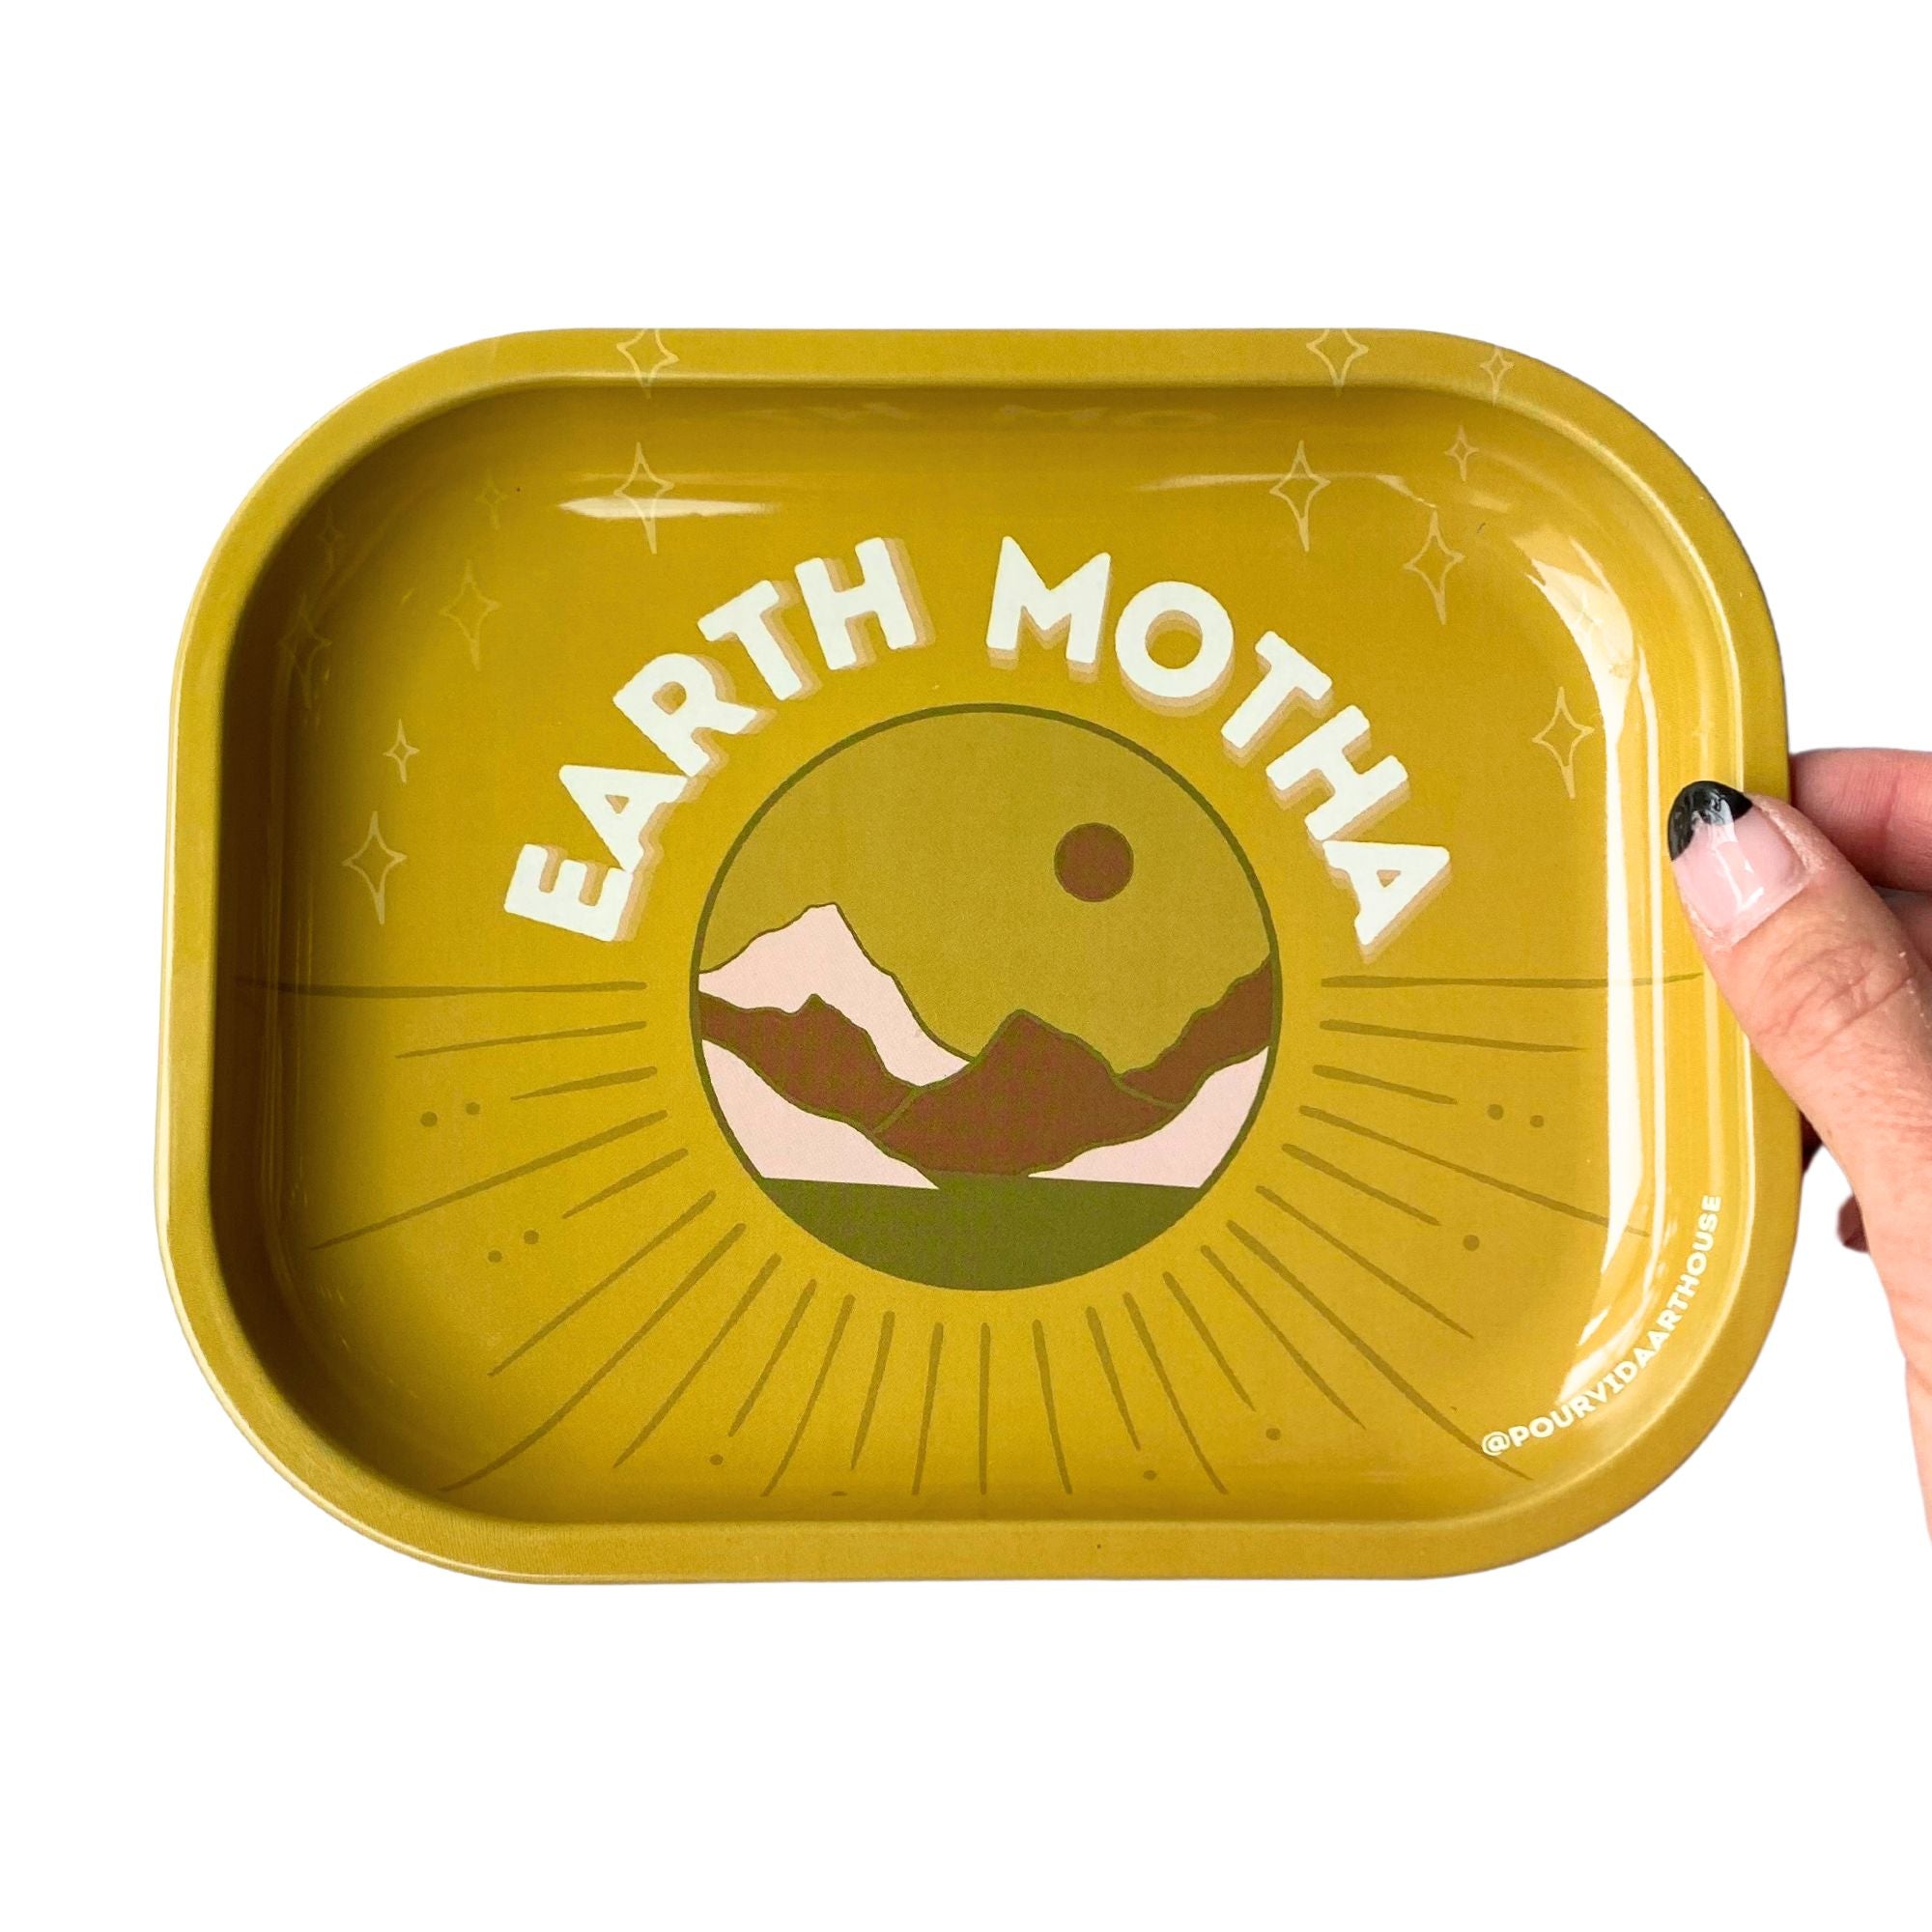 Earth Motha Tray